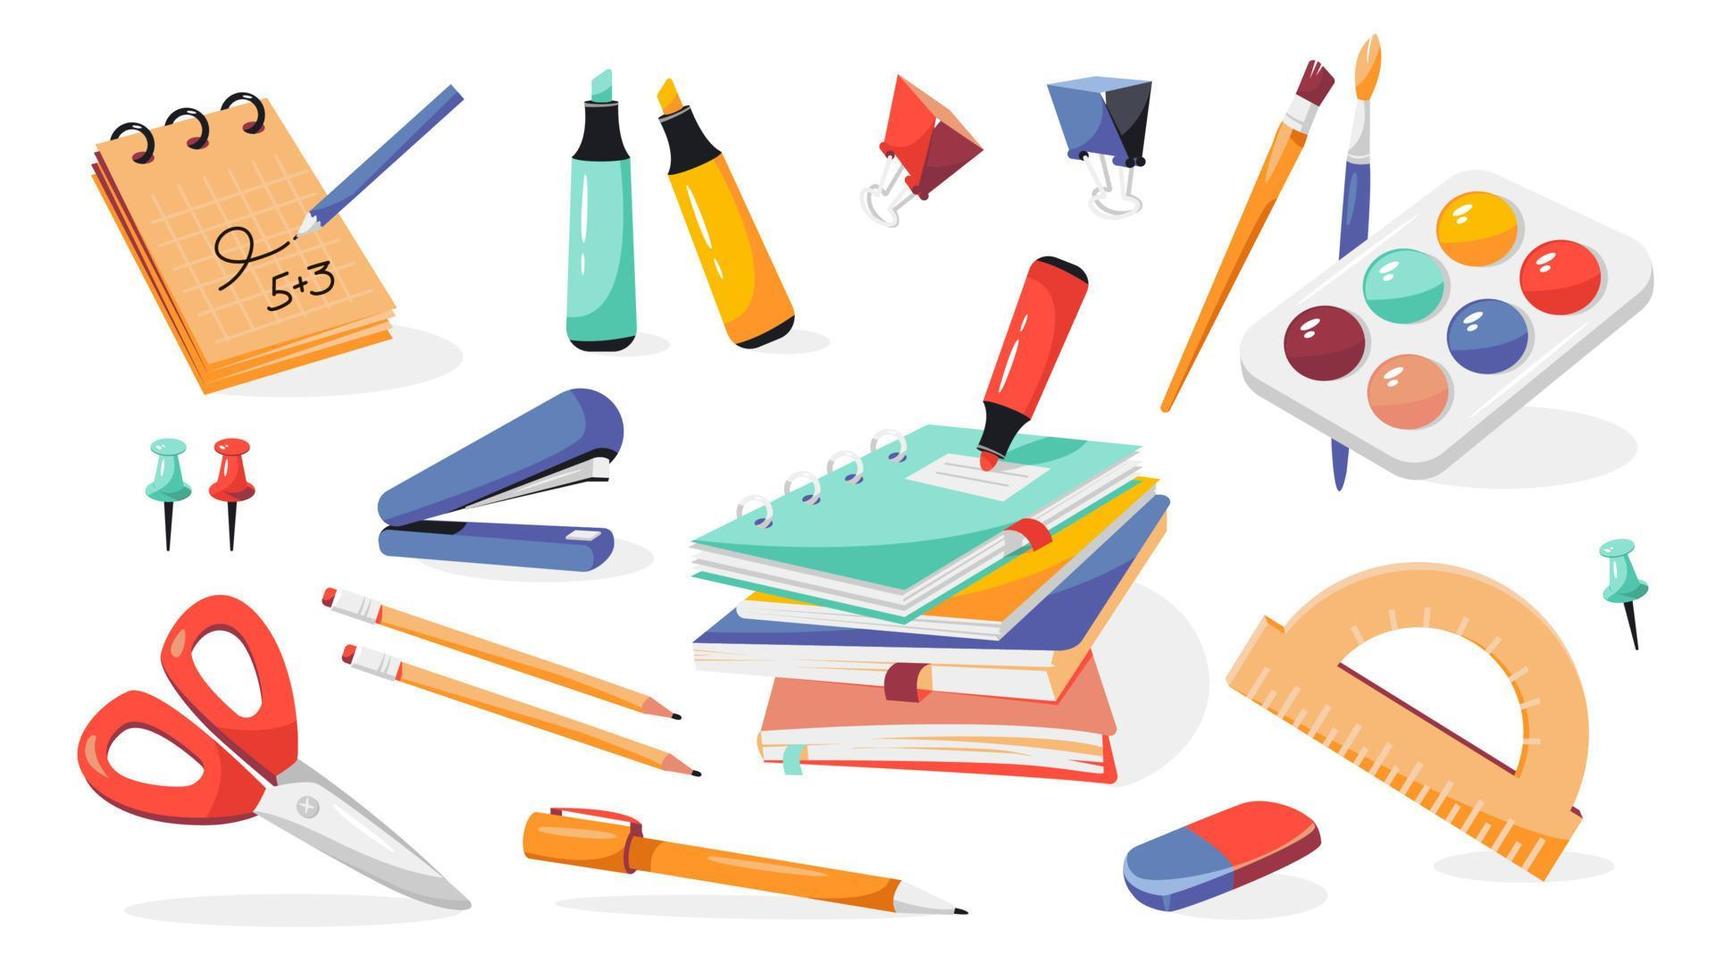 útiles escolares, cuadernos, bolígrafos, lápices, borrador, pinturas, pinceles, engrapadora, tijeras, marcadores, transportador, bloc de notas. De vuelta a la escuela. vector